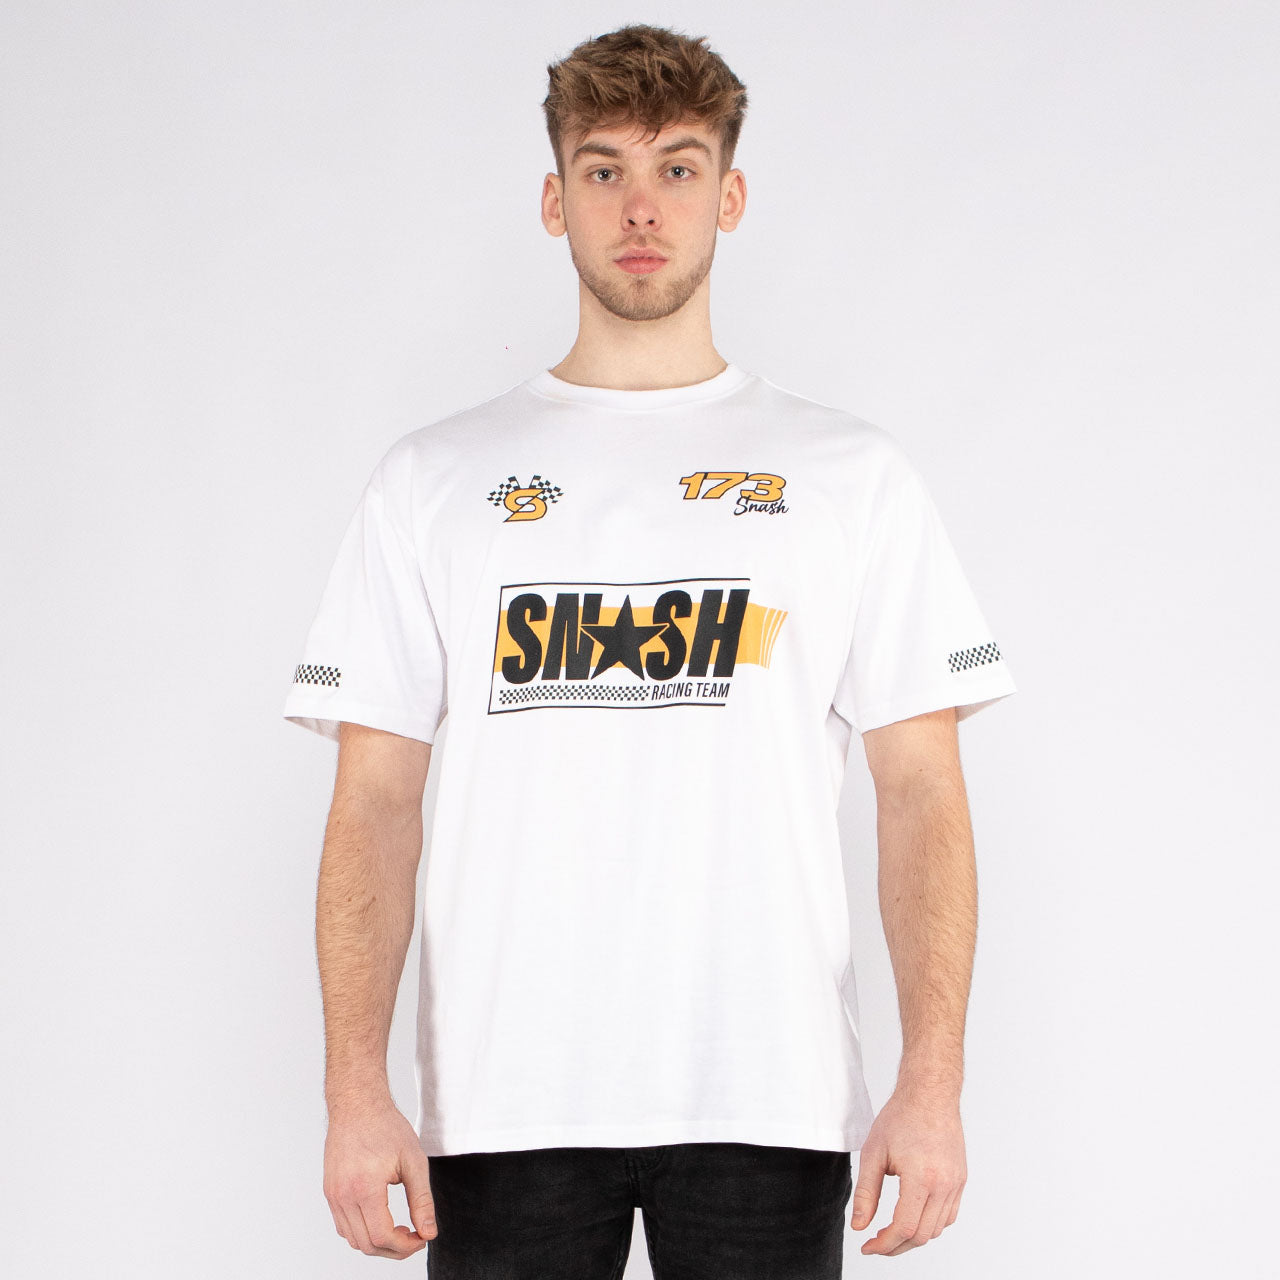 Snash - Race Team Shirt